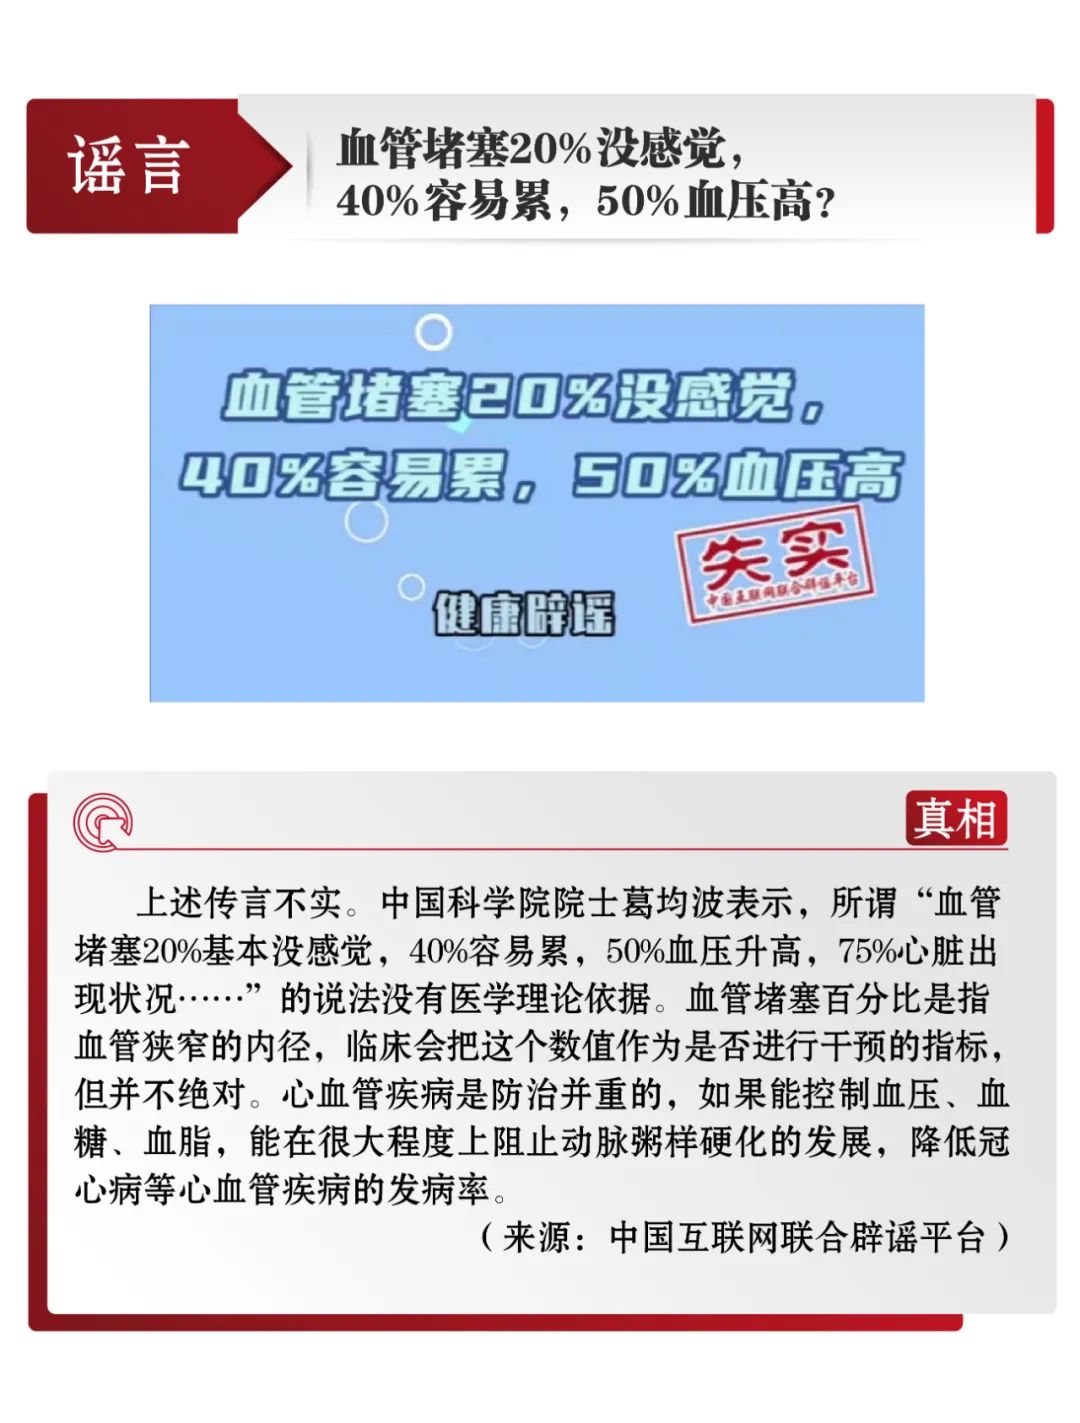 中国互联网联合辟谣平台3月辟谣榜发布